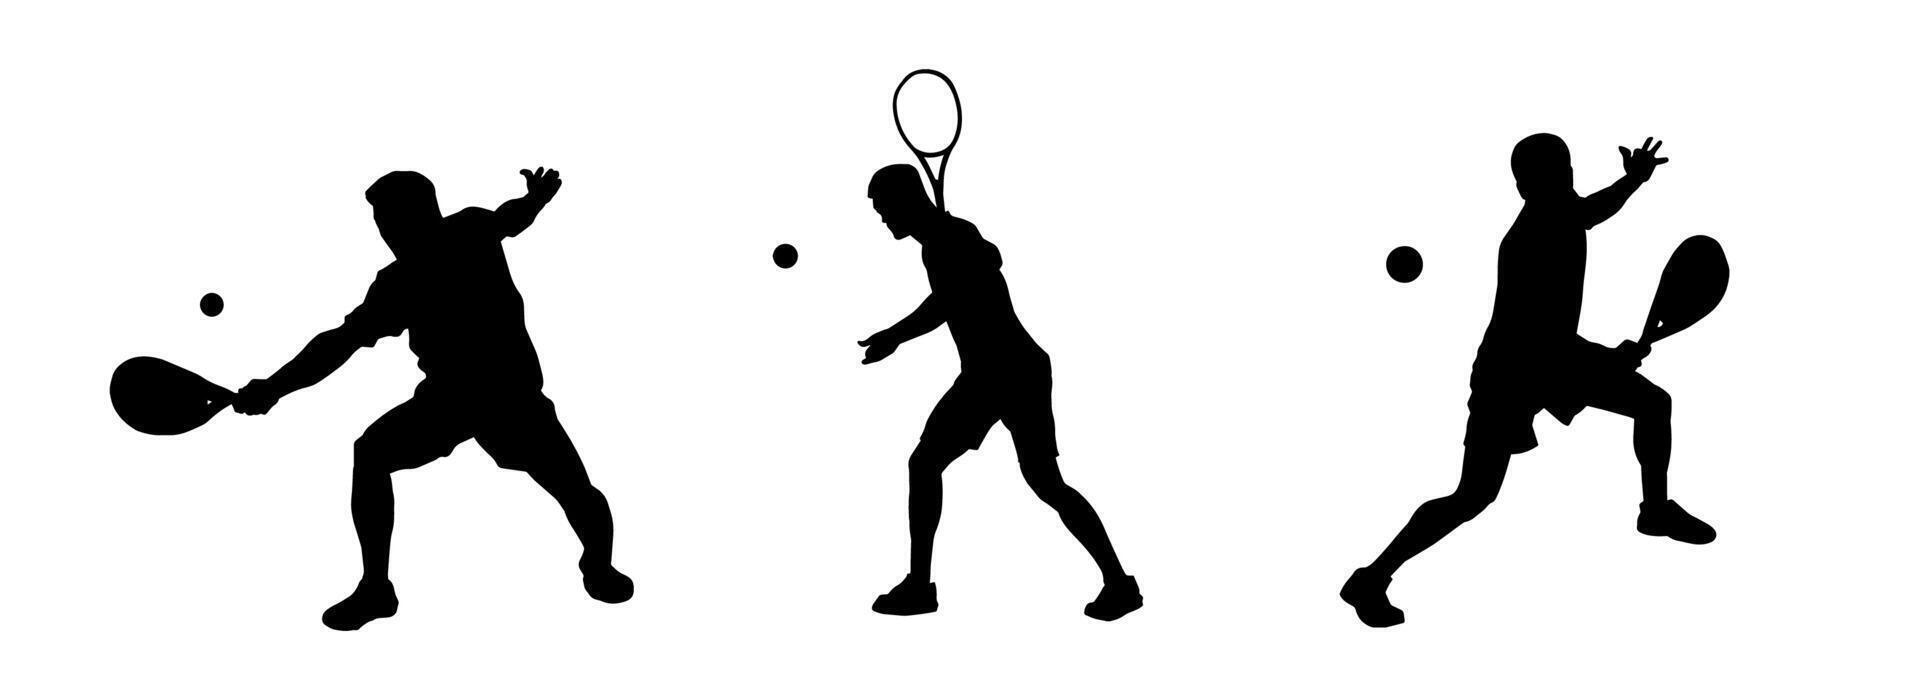 Silhouette Gruppe von männlich Tennis Spieler im Aktion Pose Tragen Schläger vektor